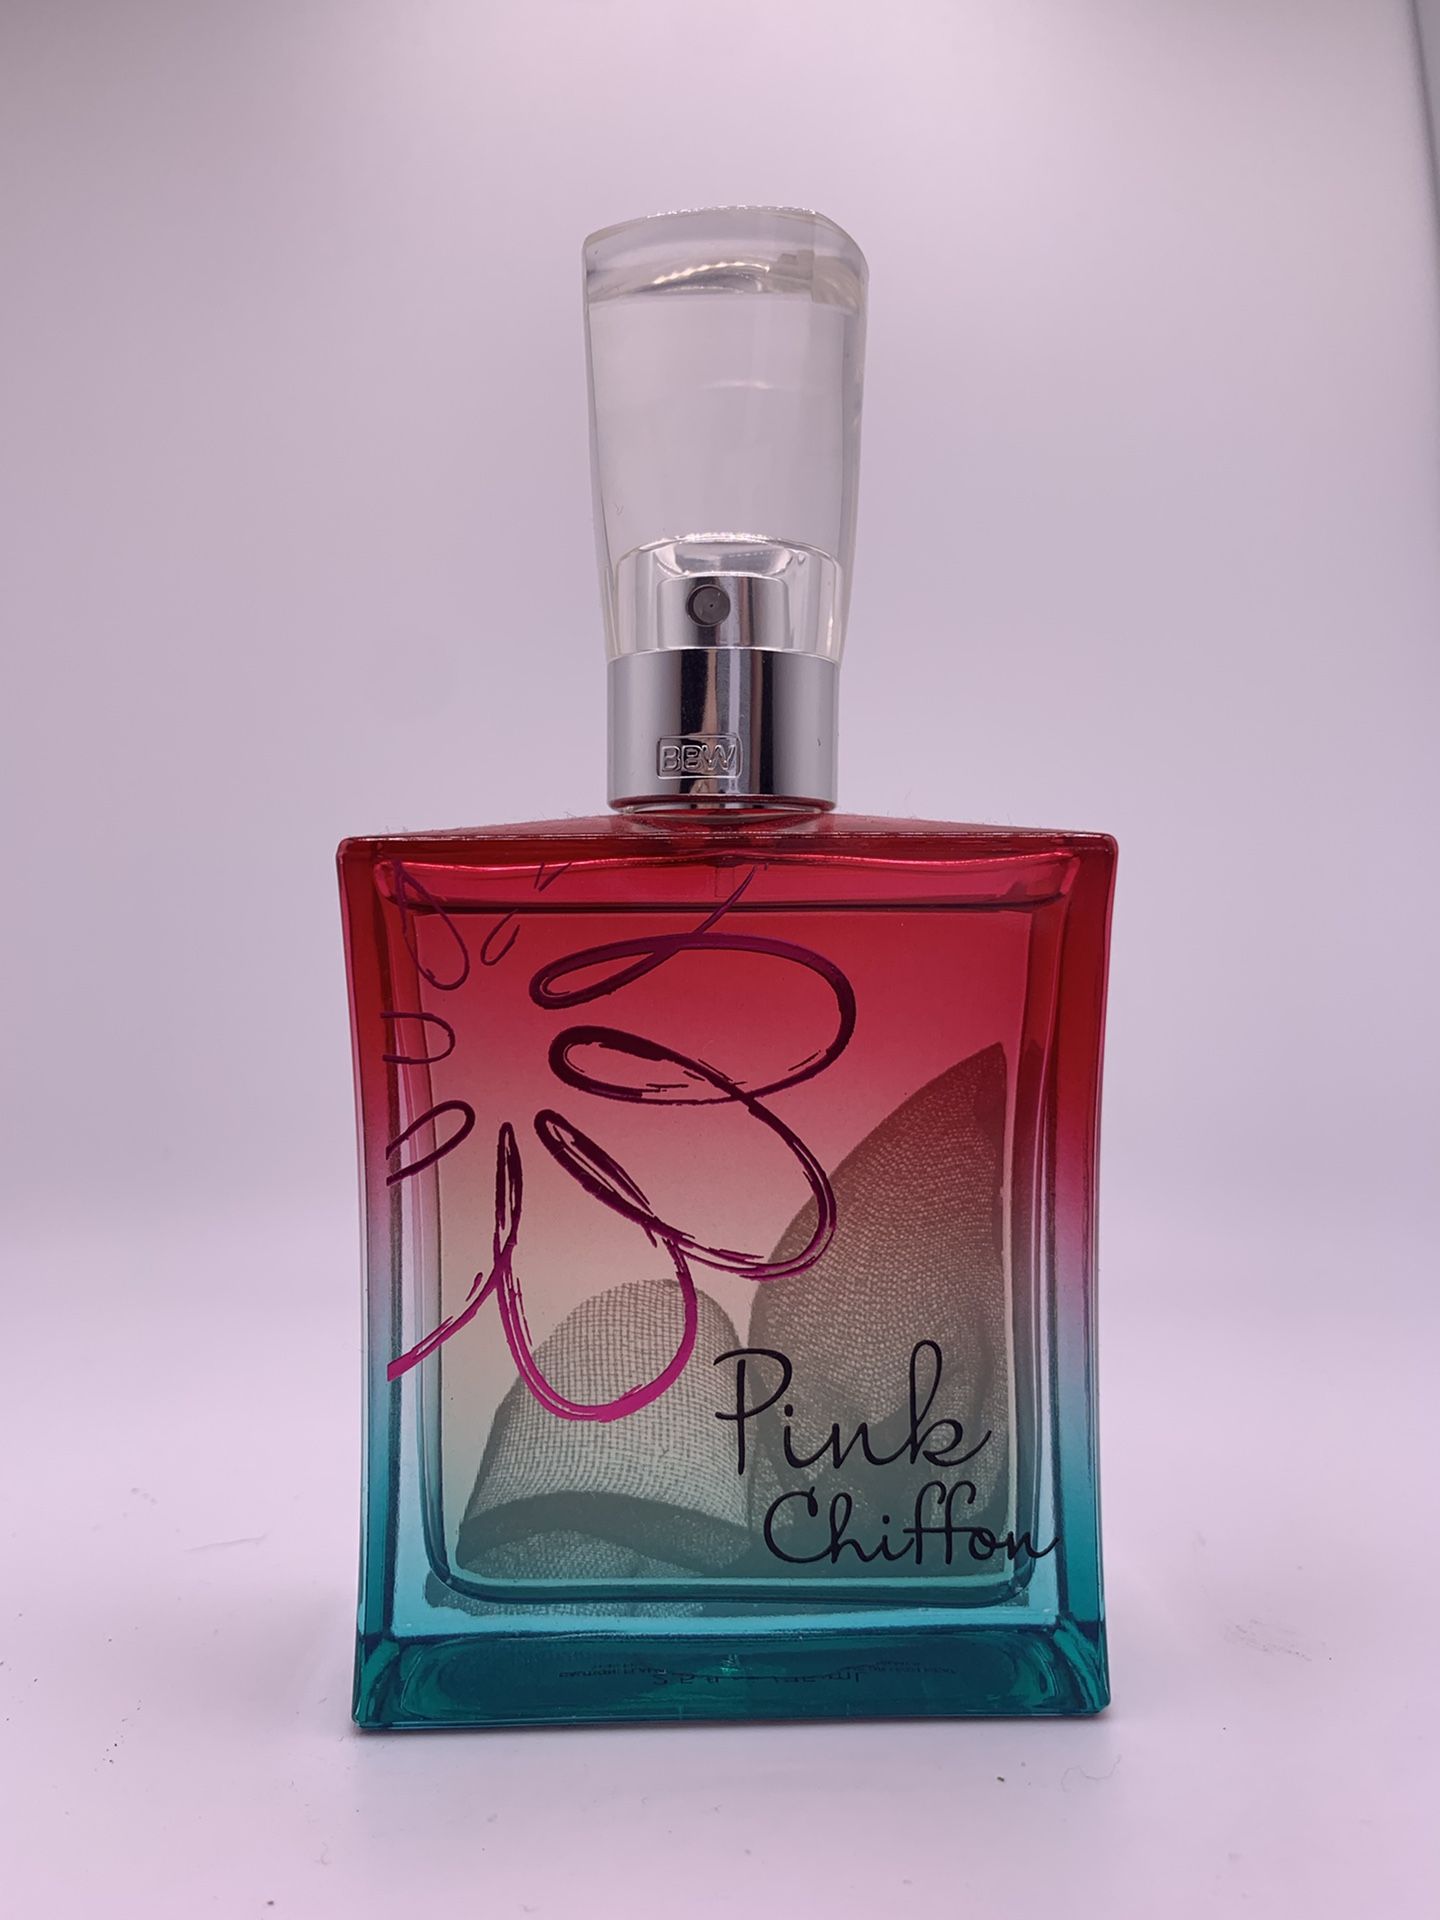 Bath & Body Works, Pink Chiffon, Perfume 2.5oz